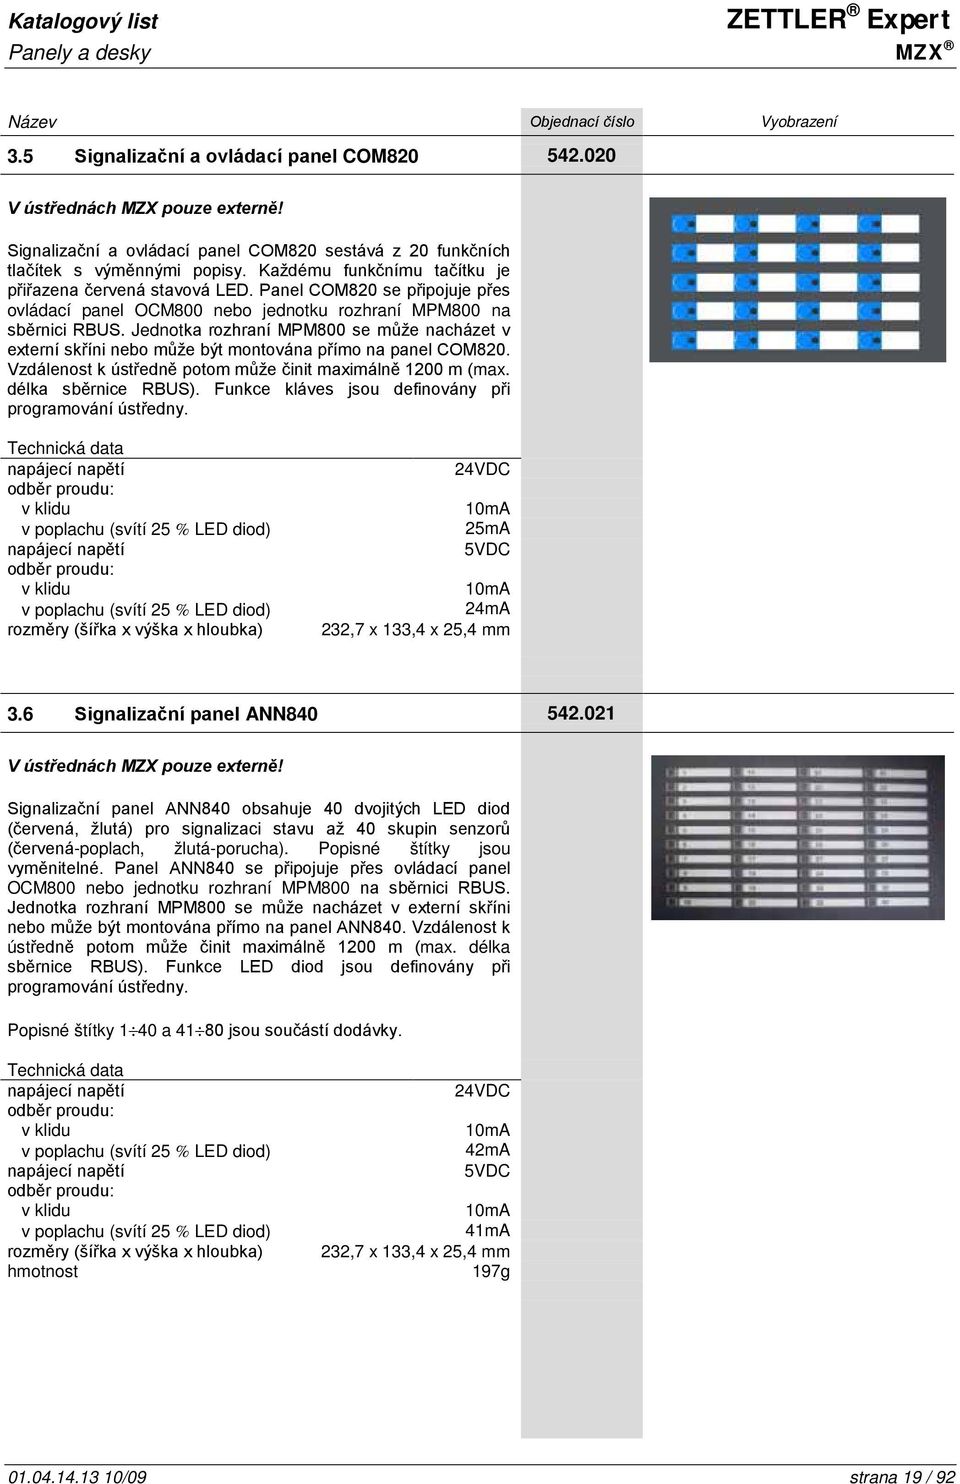 Jednotka rozhraní MPM800 se může nacházet v externí skříni nebo může být montována přímo na panel COM820. Vzdálenost k ústředně potom může činit maximálně 1200 m (max. délka sběrnice RBUS).